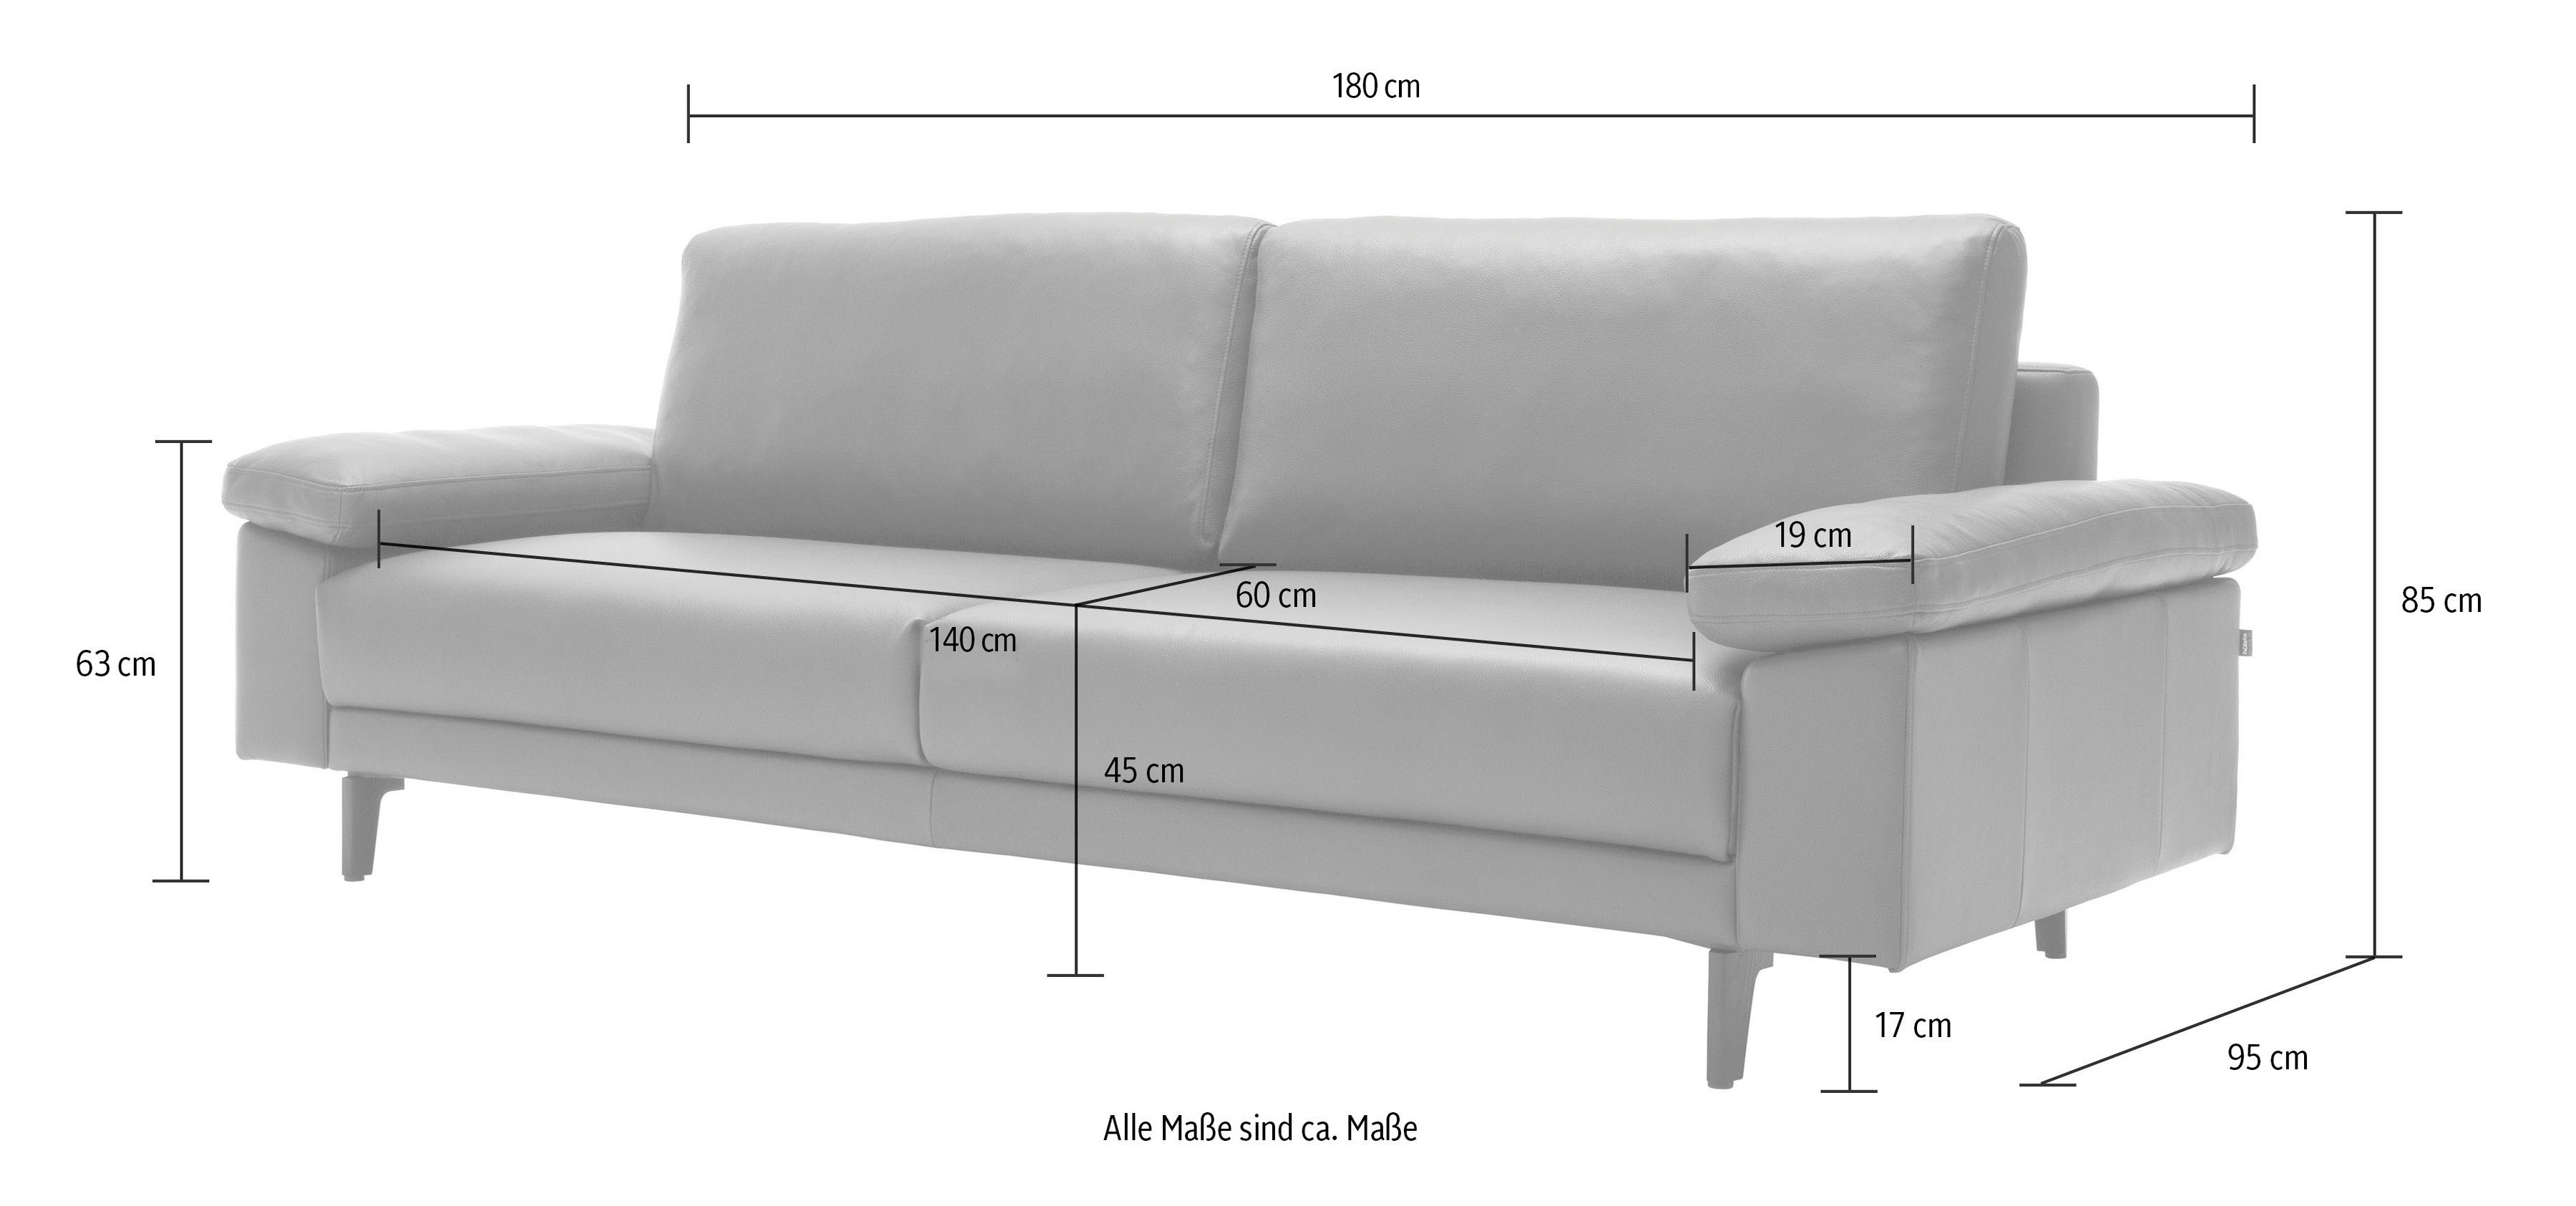 hs.450 hülsta 2-Sitzer sofa